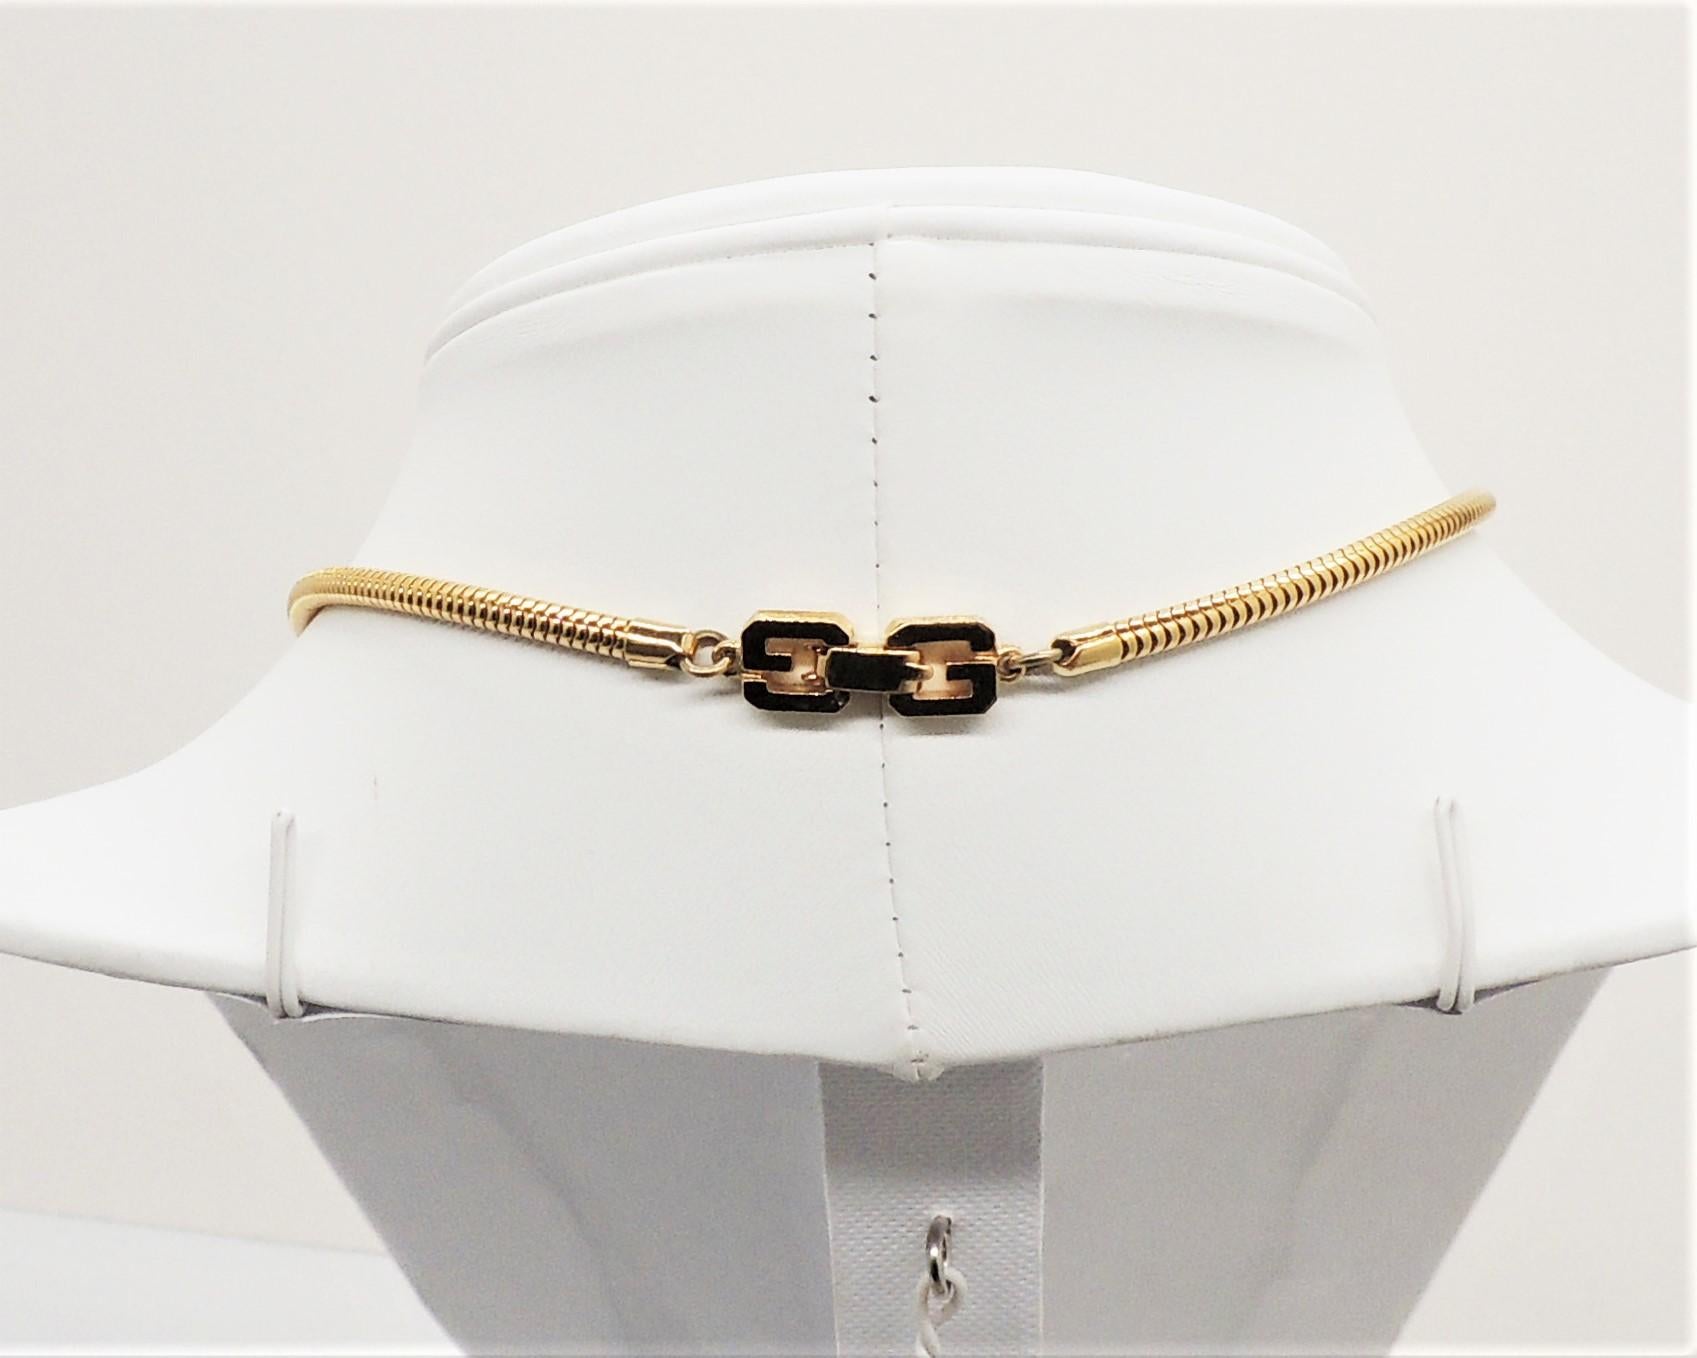 Modernistische, goldfarbene Lucite-Halskette mit schwarzen Lucite-Kugeln in der Mitte und dem Givenchy GG-Logo am Faltverschluss. Gekennzeichnet mit 